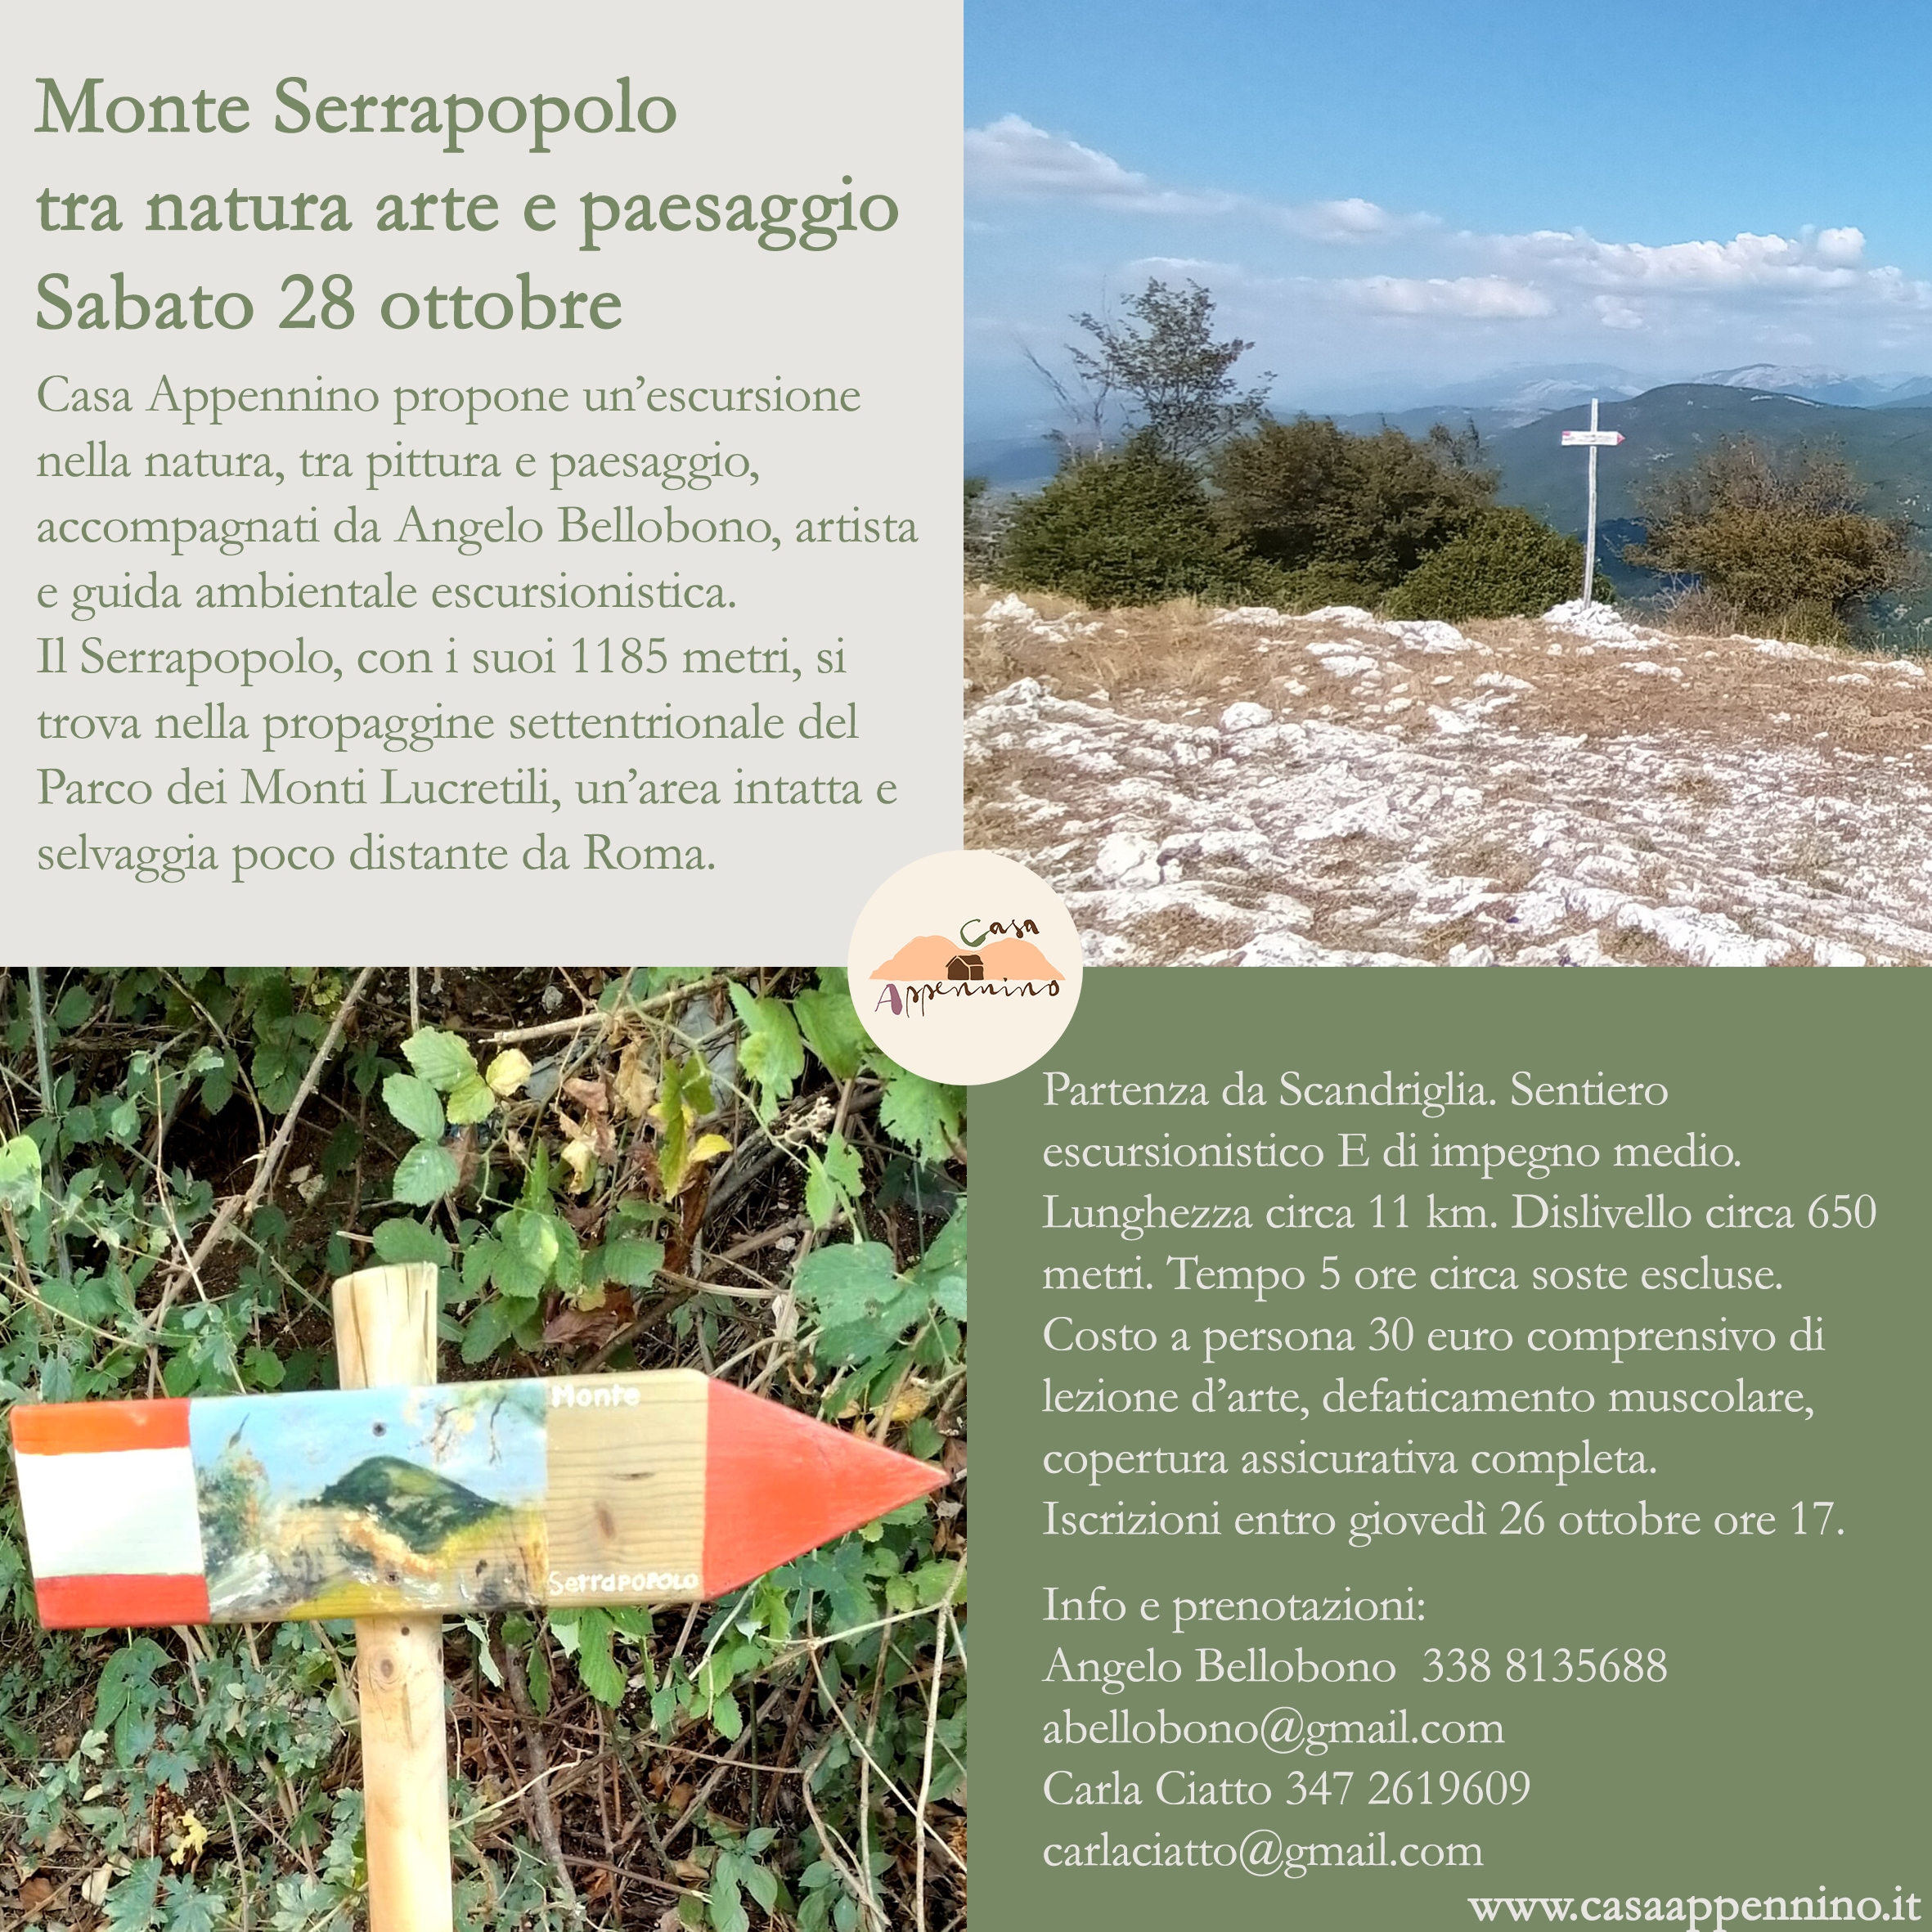 Monte Serrapopolo tra natura arte e paesaggio 28 ottobre